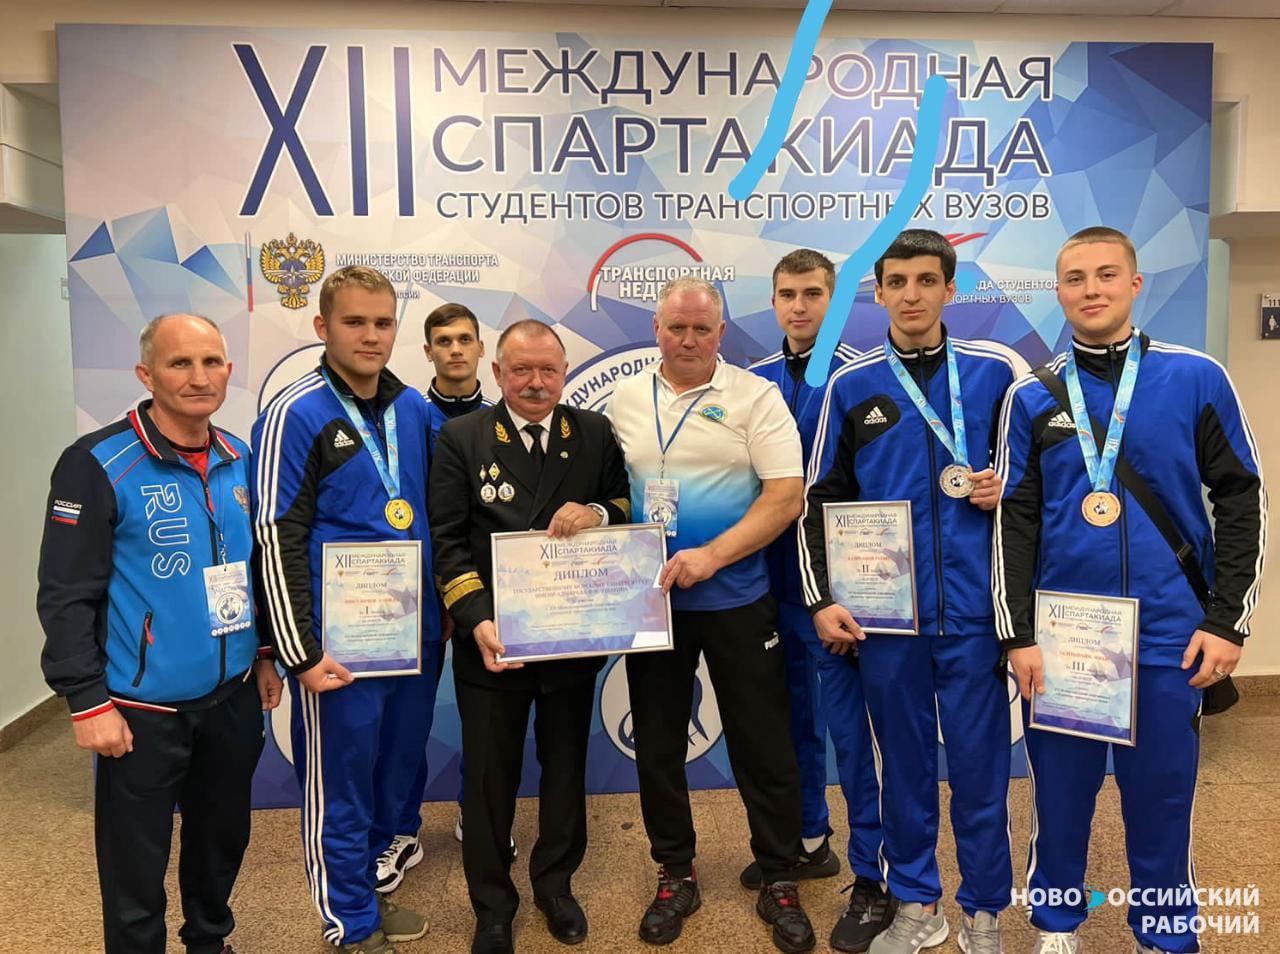 Боксёры из «Ушаковки» привезли призовые места, завоеванные на Международной спартакиаде